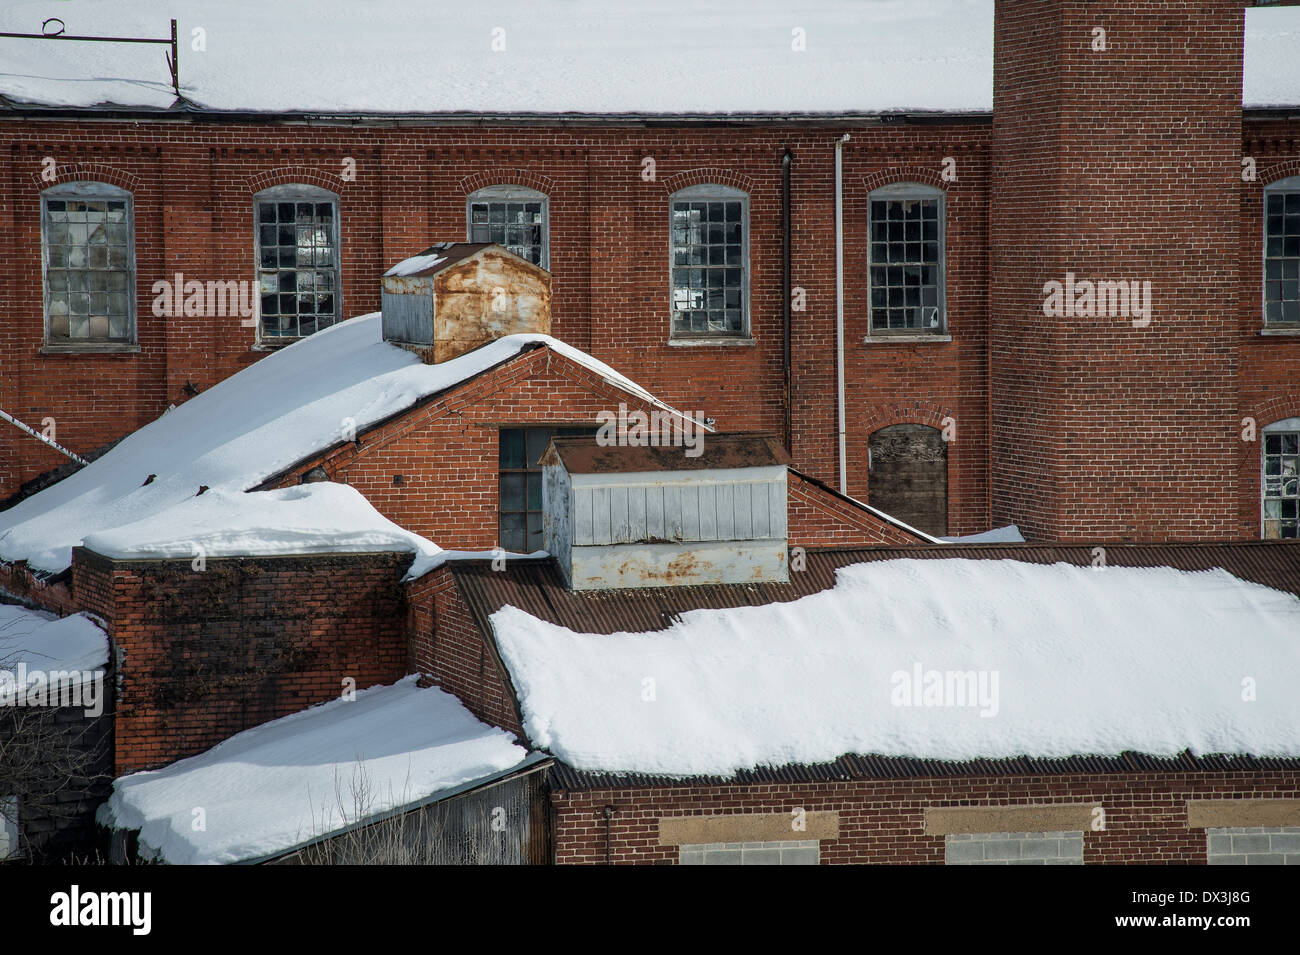 Ancien bâtiment industriel en brique avec de la neige à l'extérieur Banque D'Images